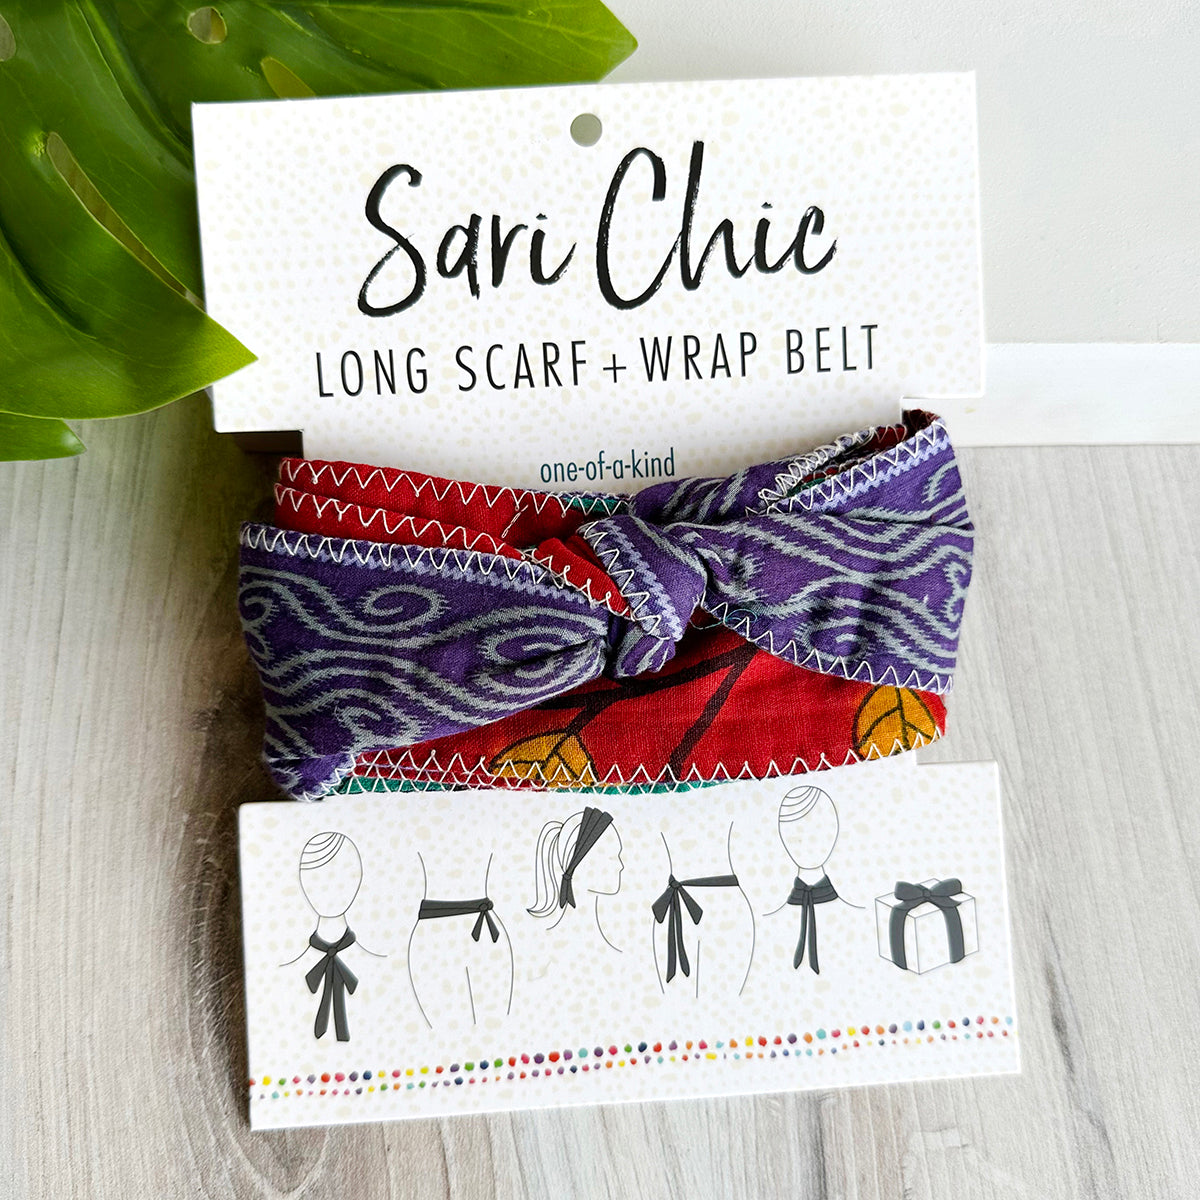 Sari Chic Long Scarf & Wrap Belt